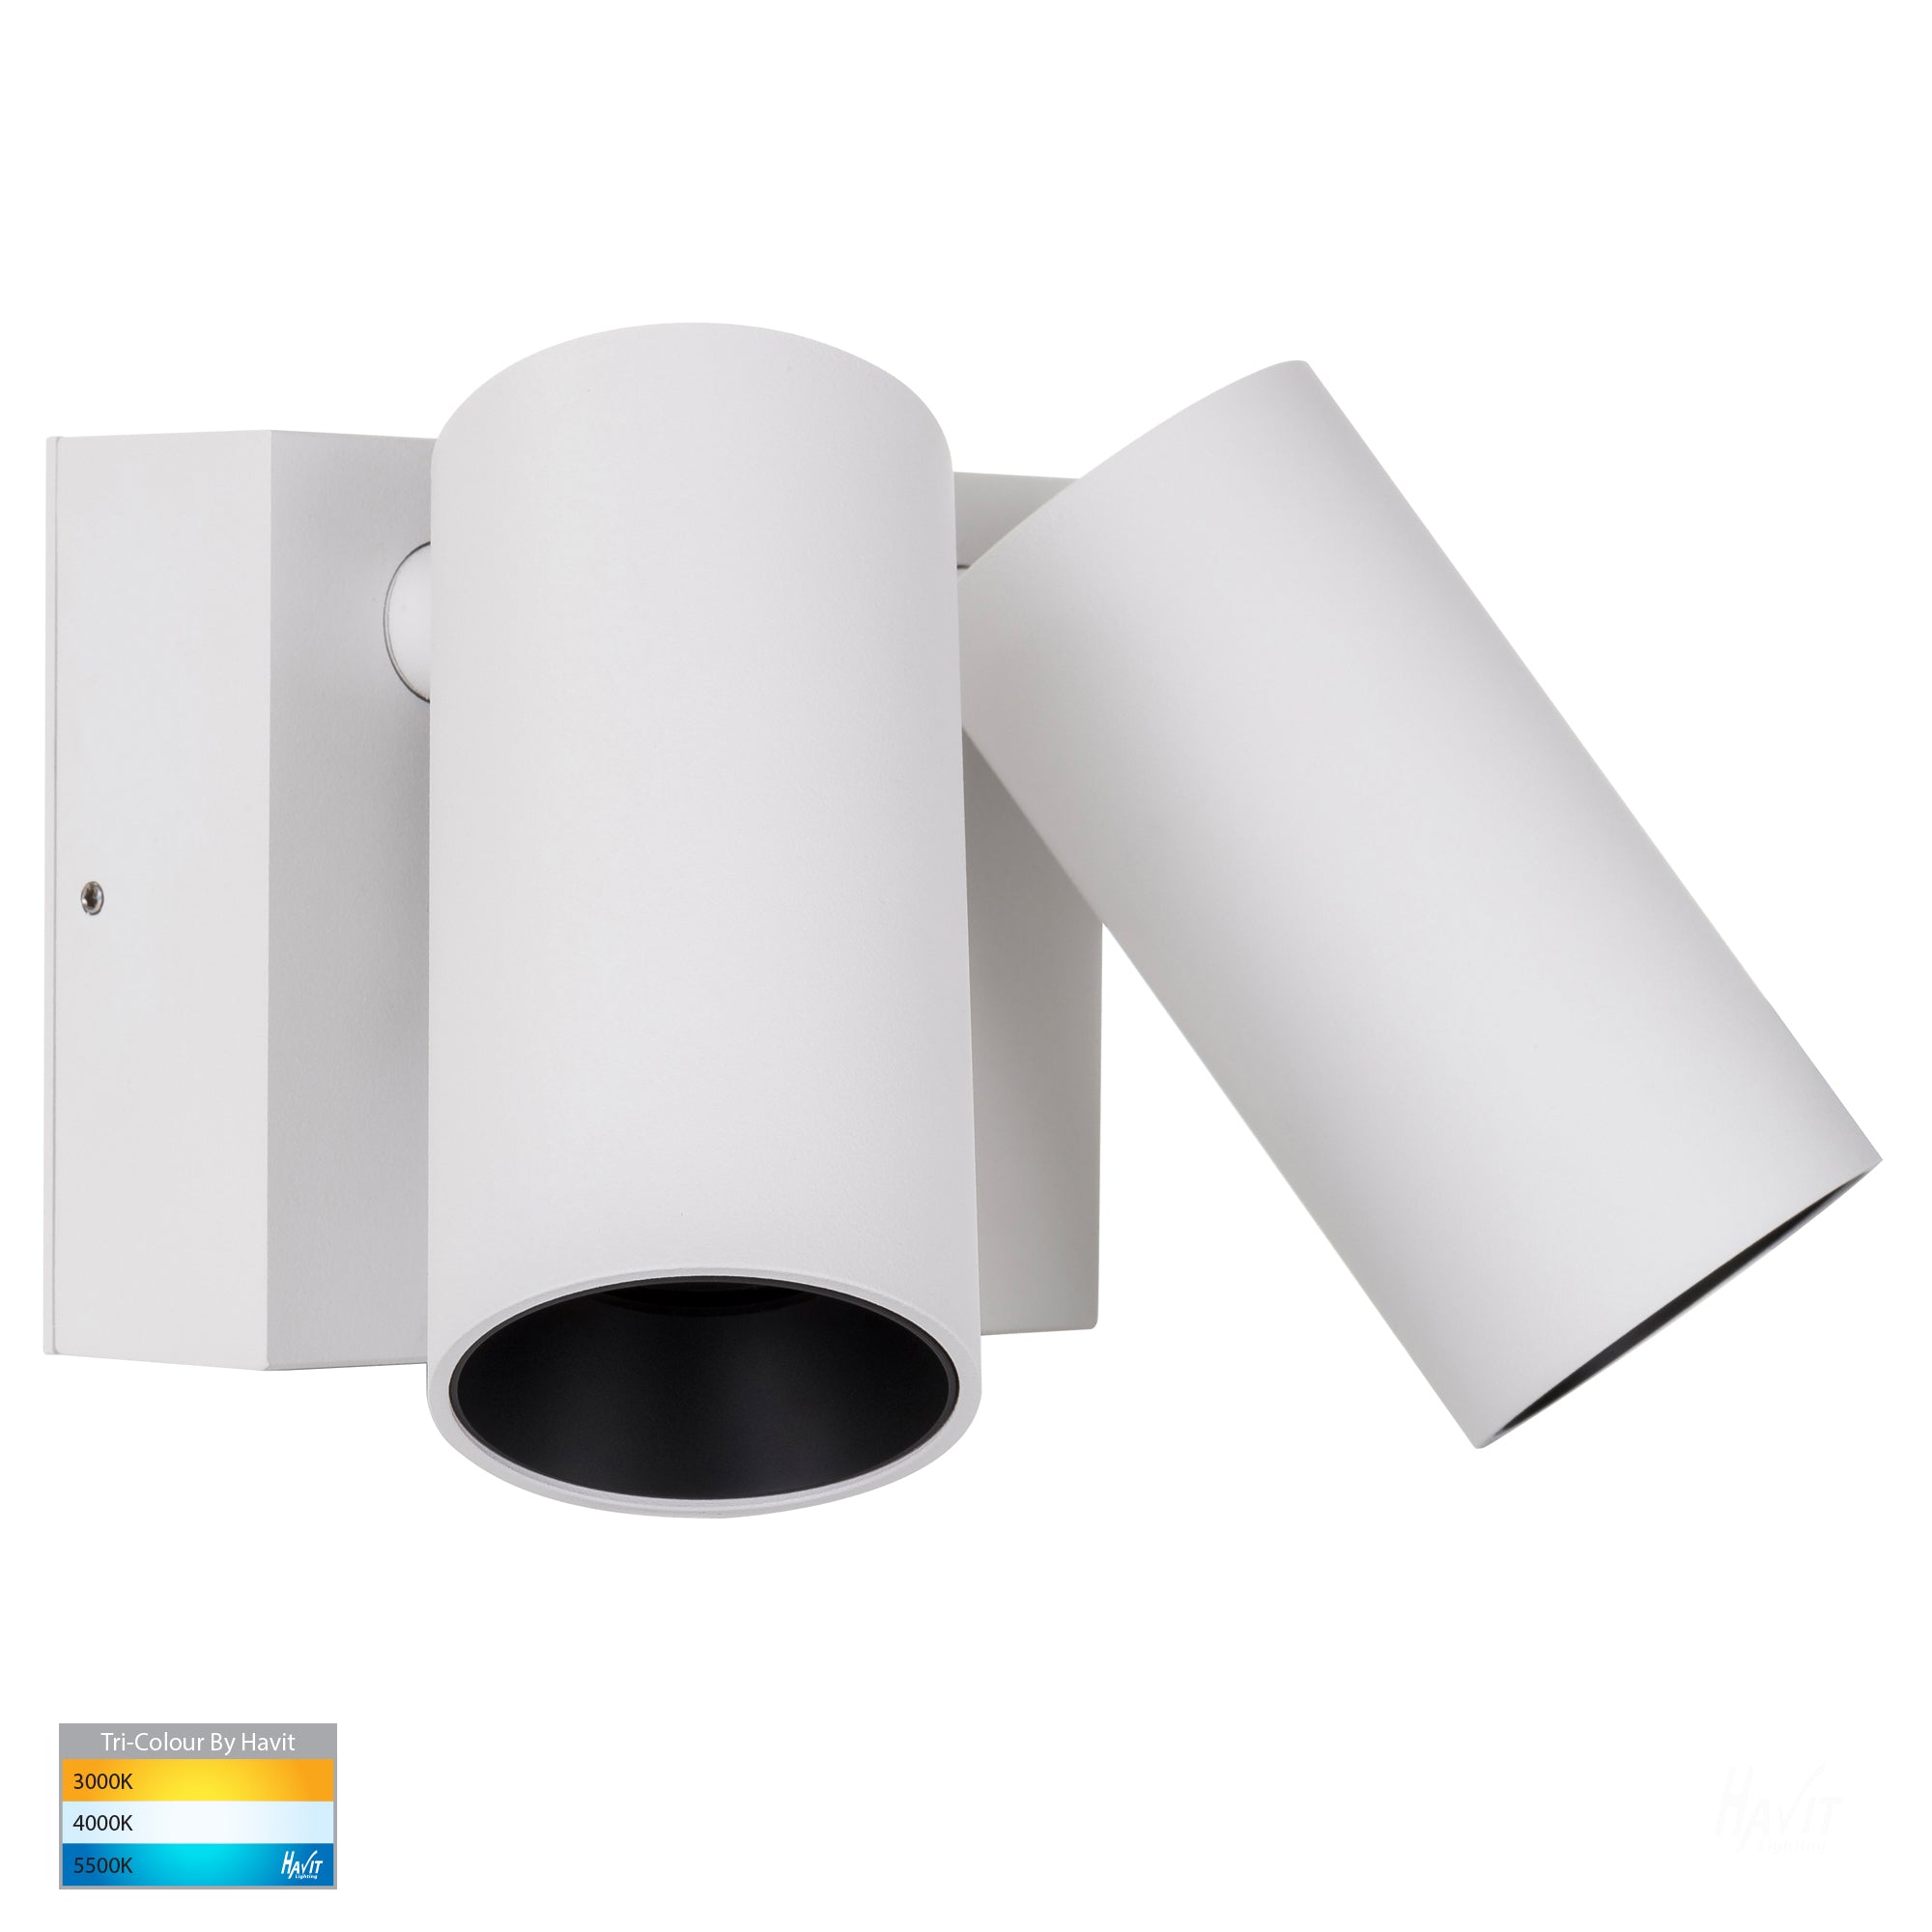 Lighting - With HV3684T-WHT Light Havit Adjustable Double Revo – Wall Sensor White